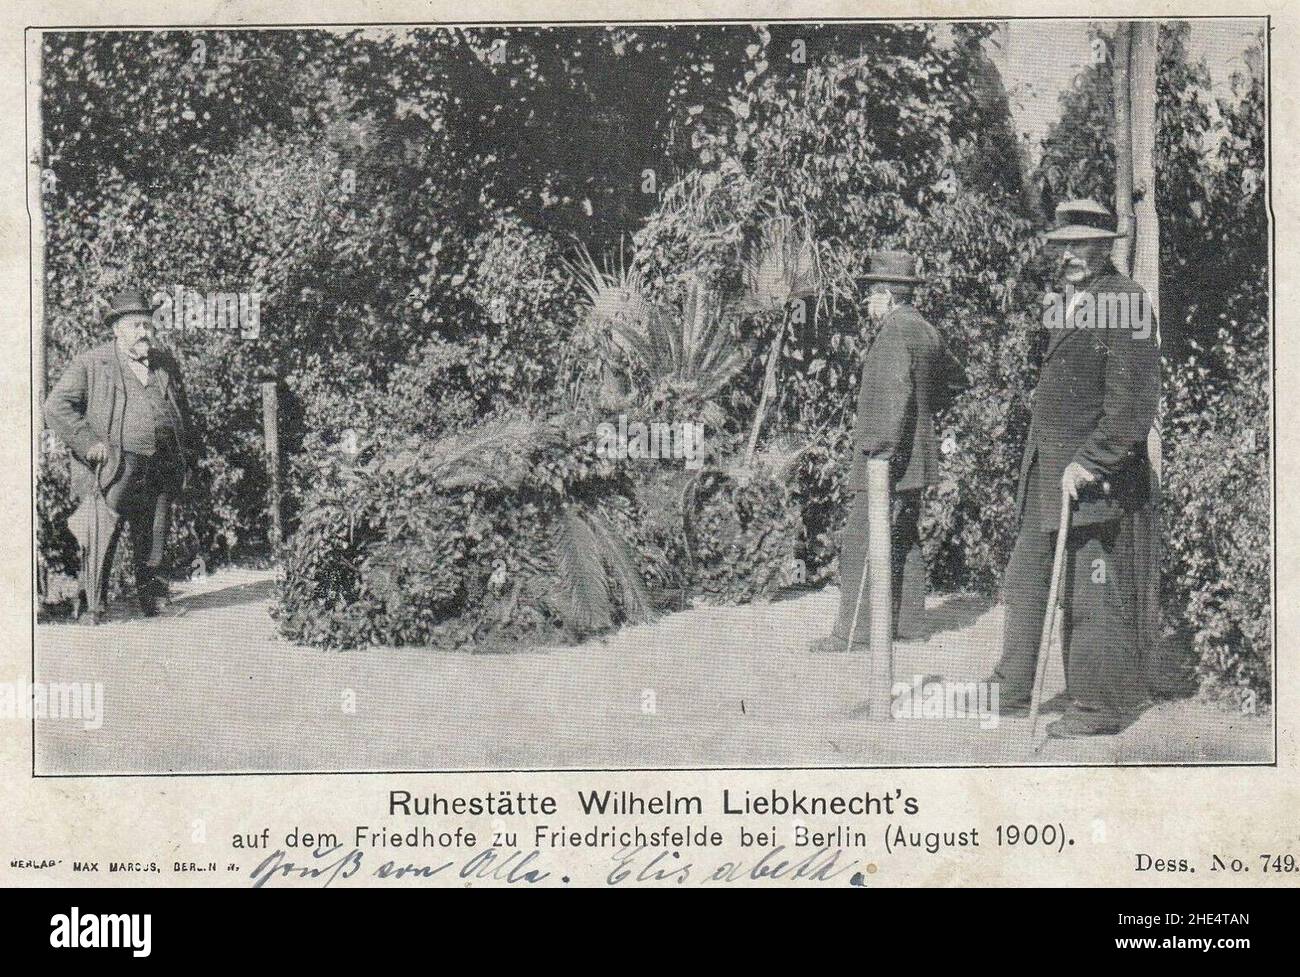 Ruhestätte Wilhelm Liebknecht, August 1900. Stock Photo